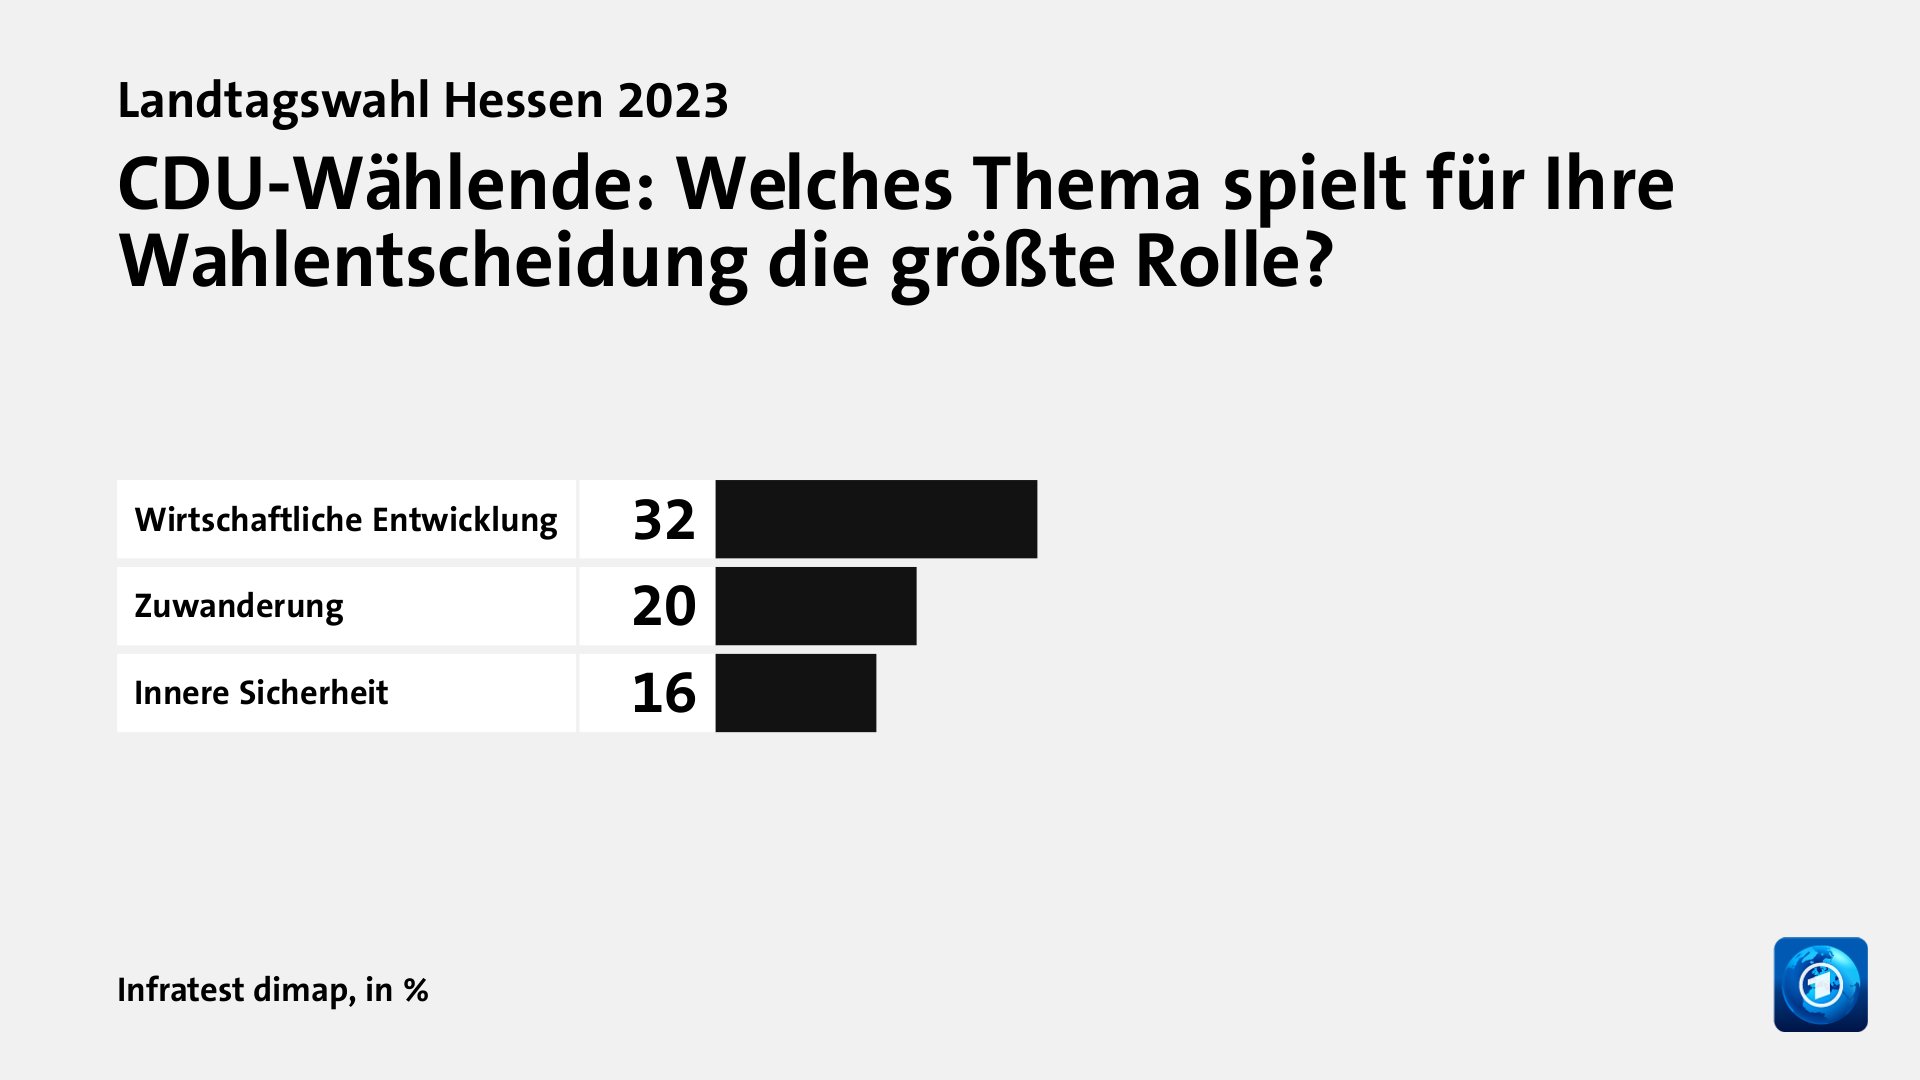 CDU-Wählende: Welches Thema spielt für Ihre Wahlentscheidung die größte Rolle?, in %: Wirtschaftliche Entwicklung 32, Zuwanderung 20, Innere Sicherheit 16, Quelle: Infratest dimap